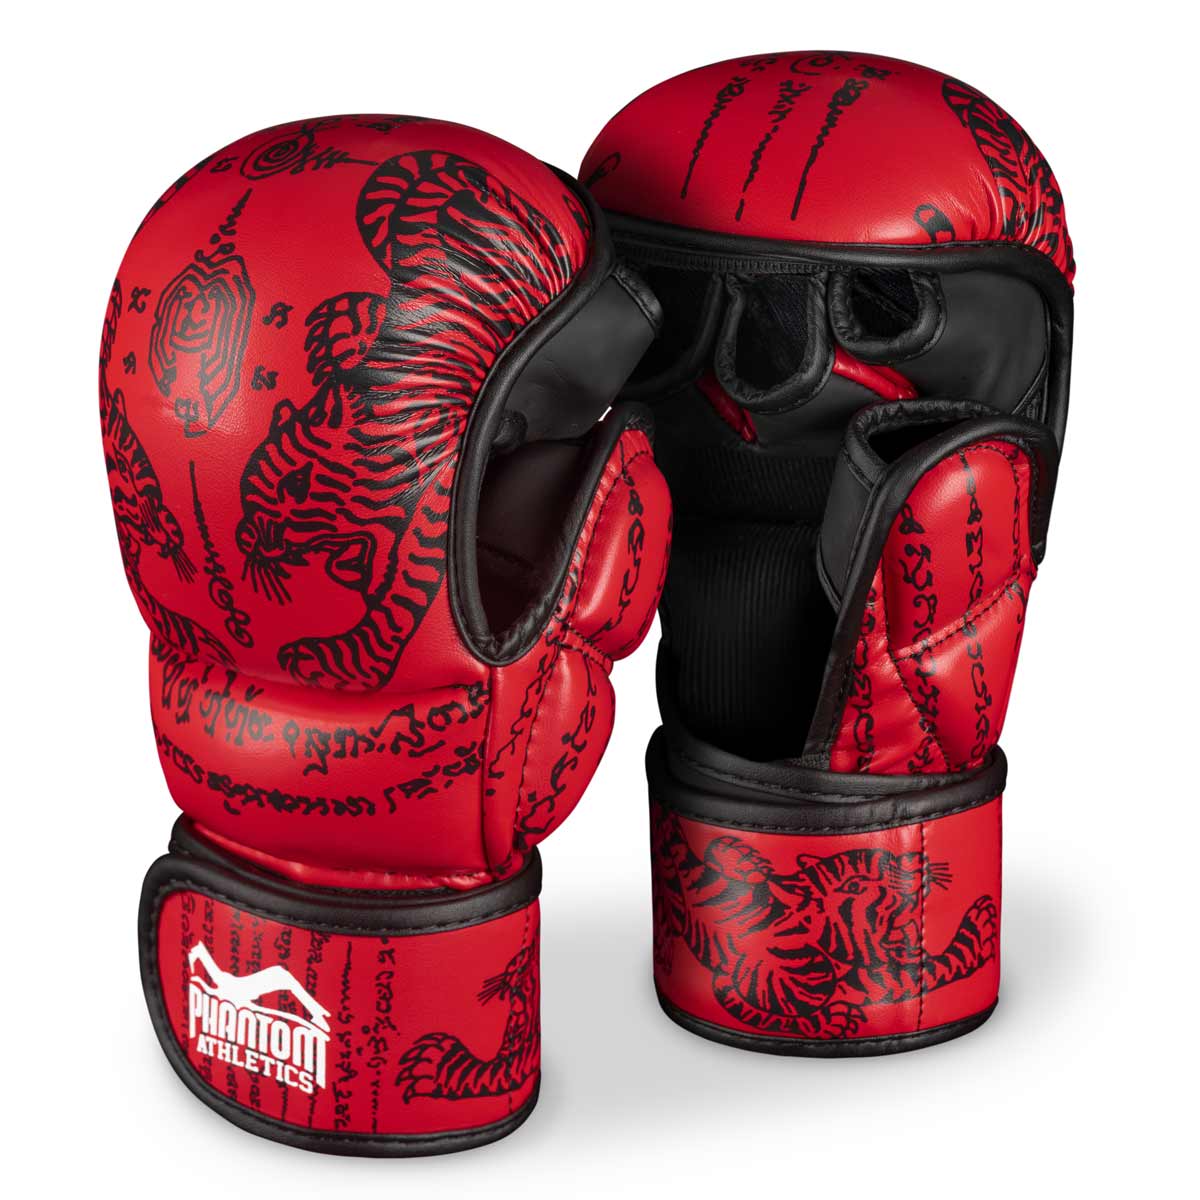 Phantom Muay Thai pirštinės, skirtos Tailando boksui ir MMA sparingui, varžyboms ir treniruotėms. Tradicinio Sak Yant dizaino ir raudonos spalvos.